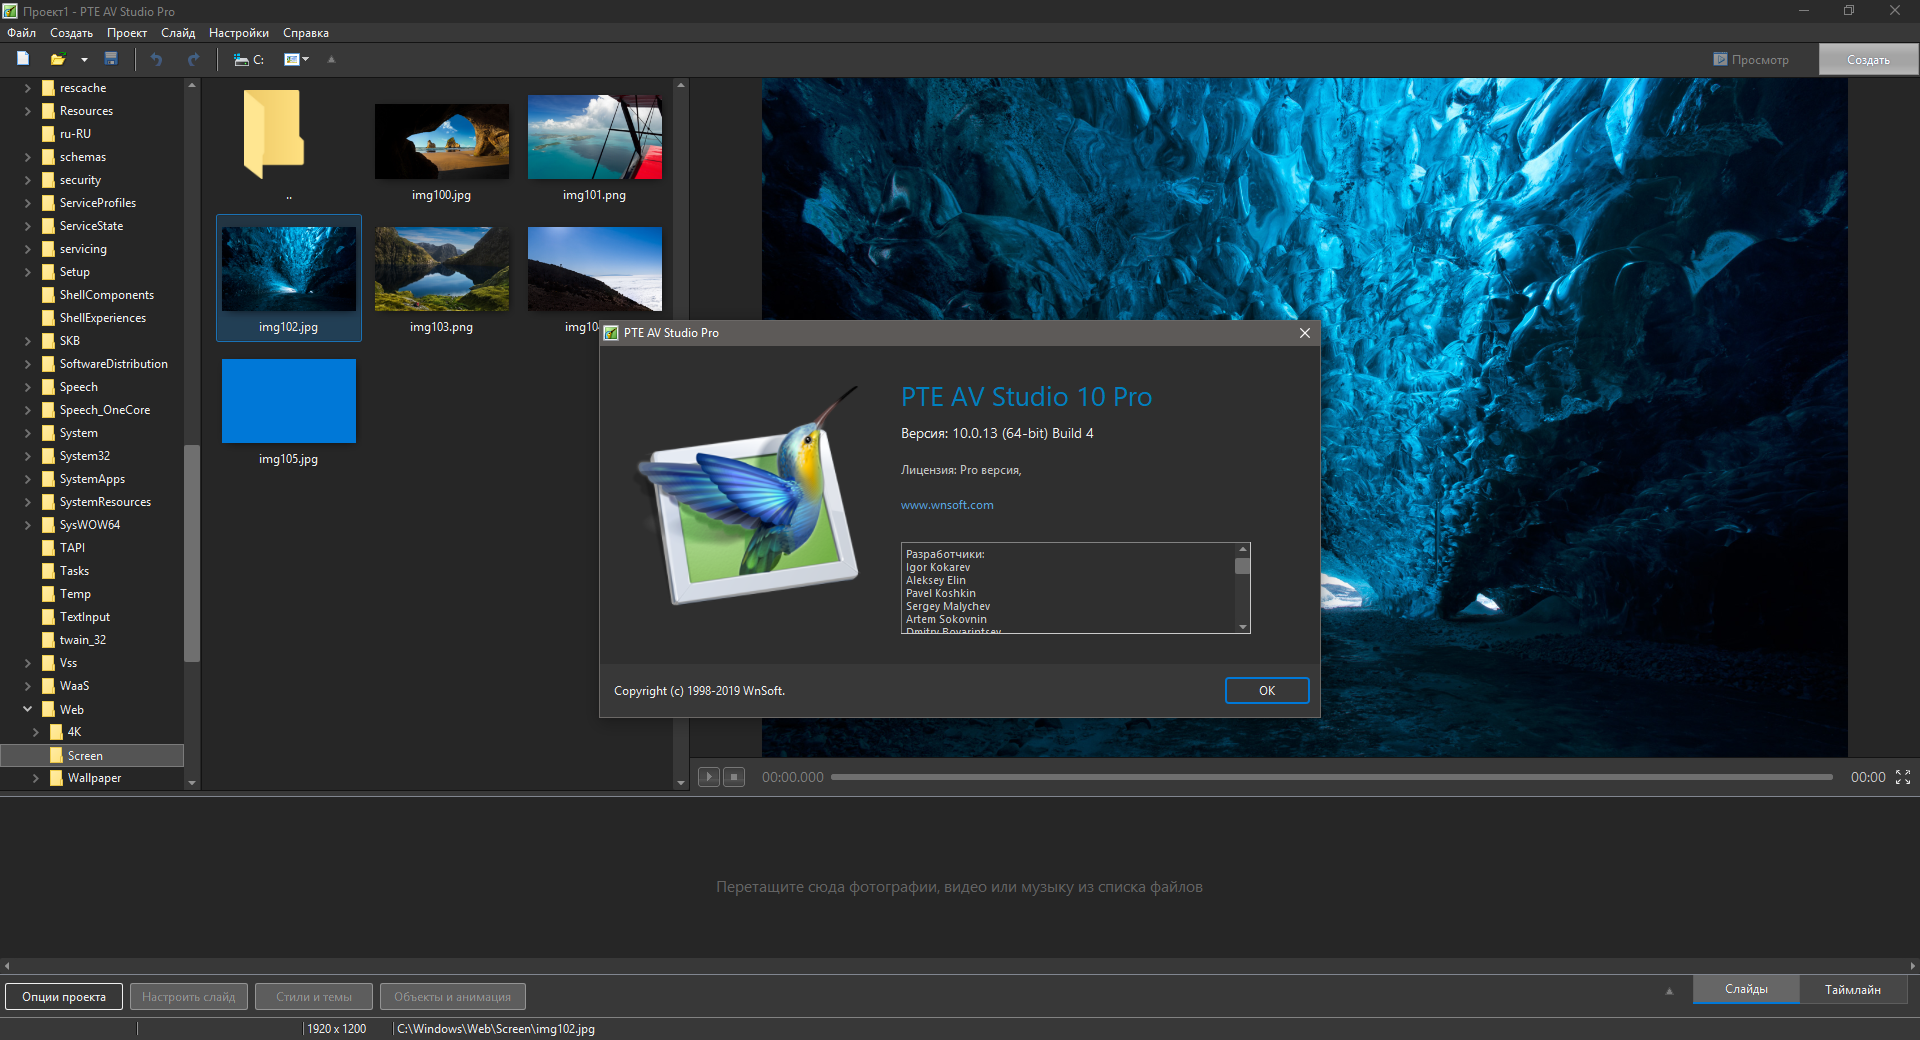 instal the last version for ipod PTE AV Studio Pro 11.0.8.1